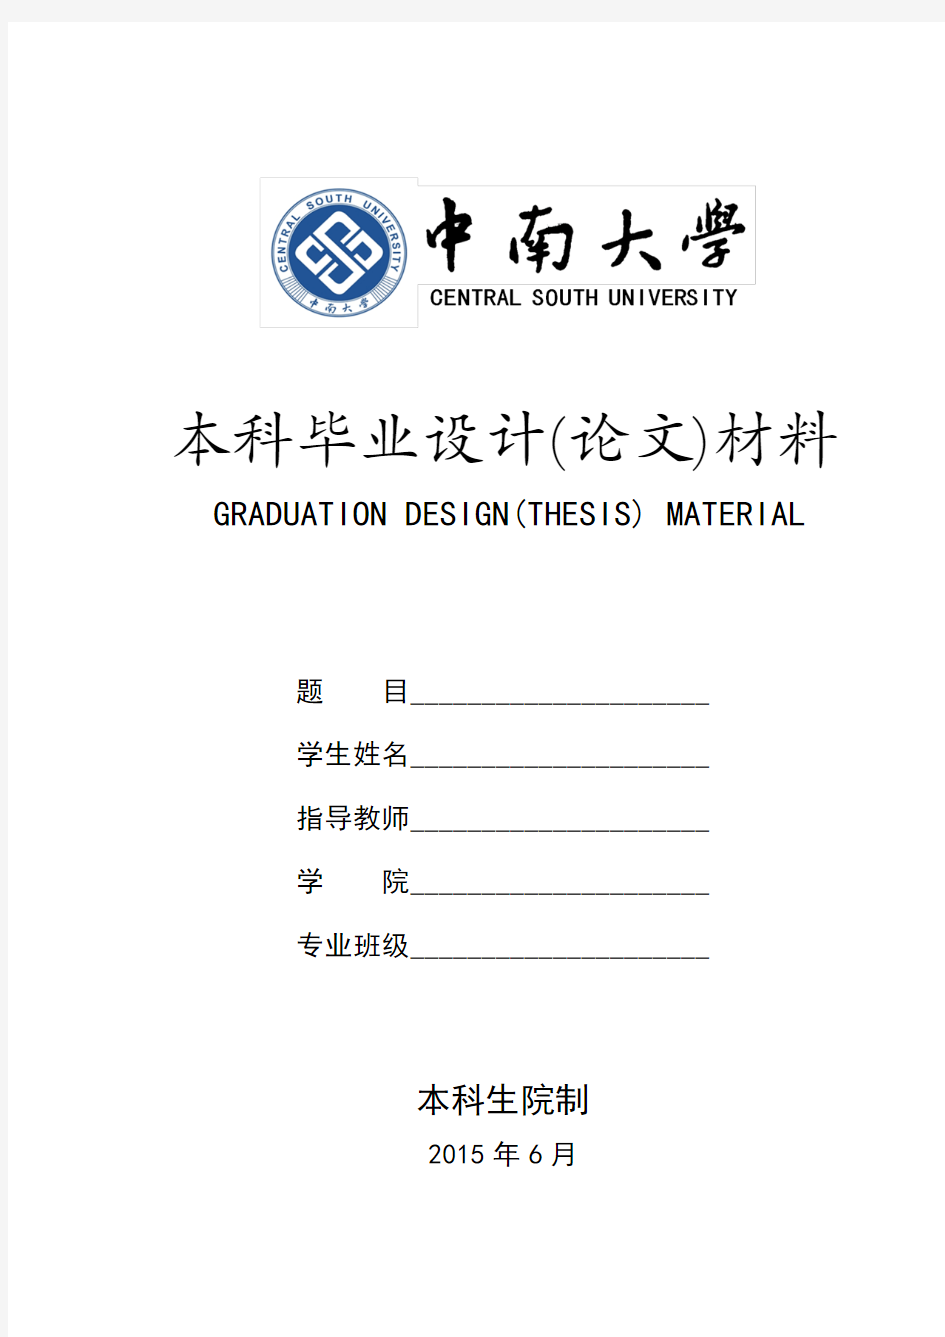 中南大学毕业设计(论文)材料封面